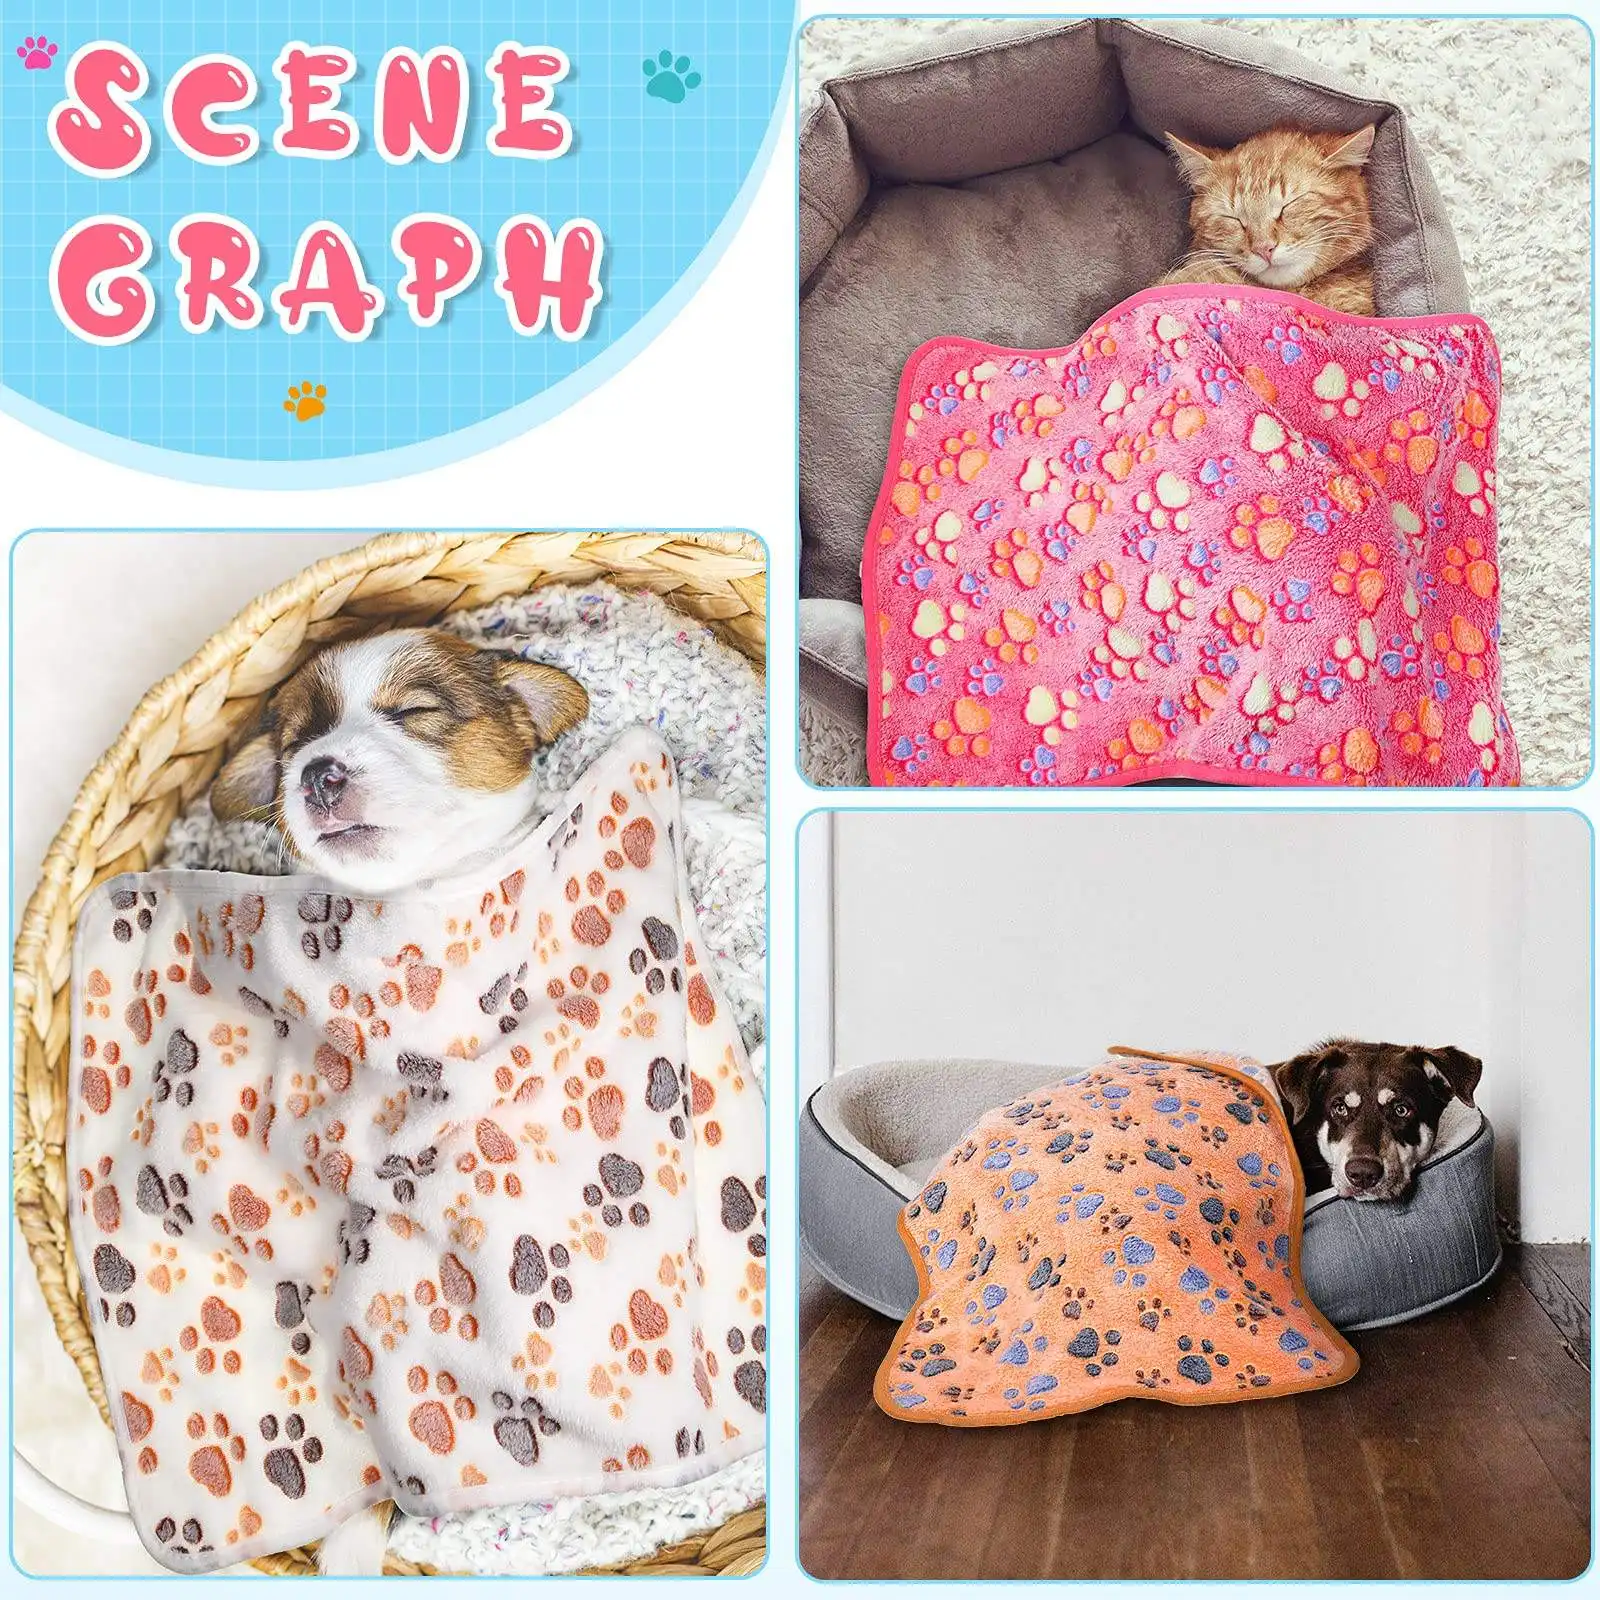 Quente Espessado Fofo Premium Dog Cobertores Pet Coral Veludo Flanela Fleece Puppy Bed Mat Pad Cobertor Com Cute Pata Impressões